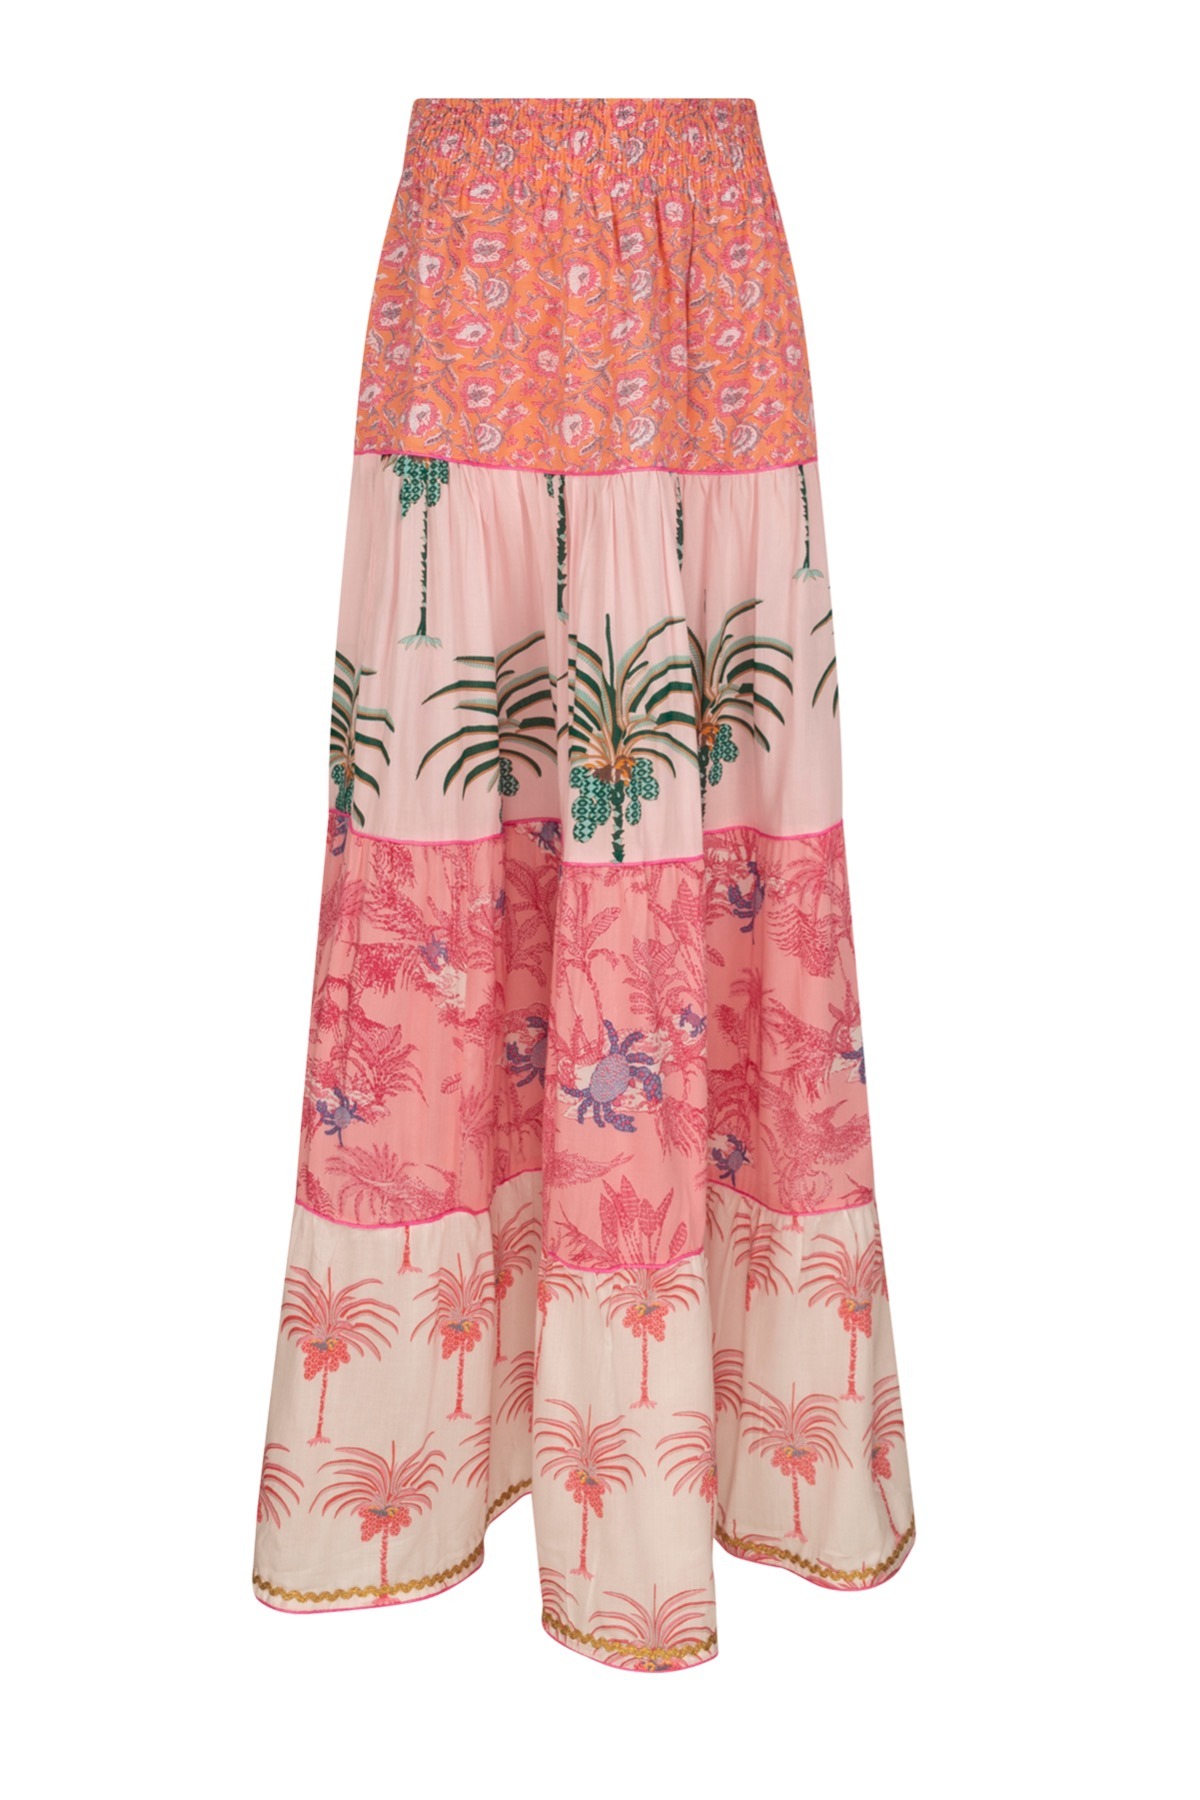 Dress Place du Soleil Dress Palm tree Skirt 2